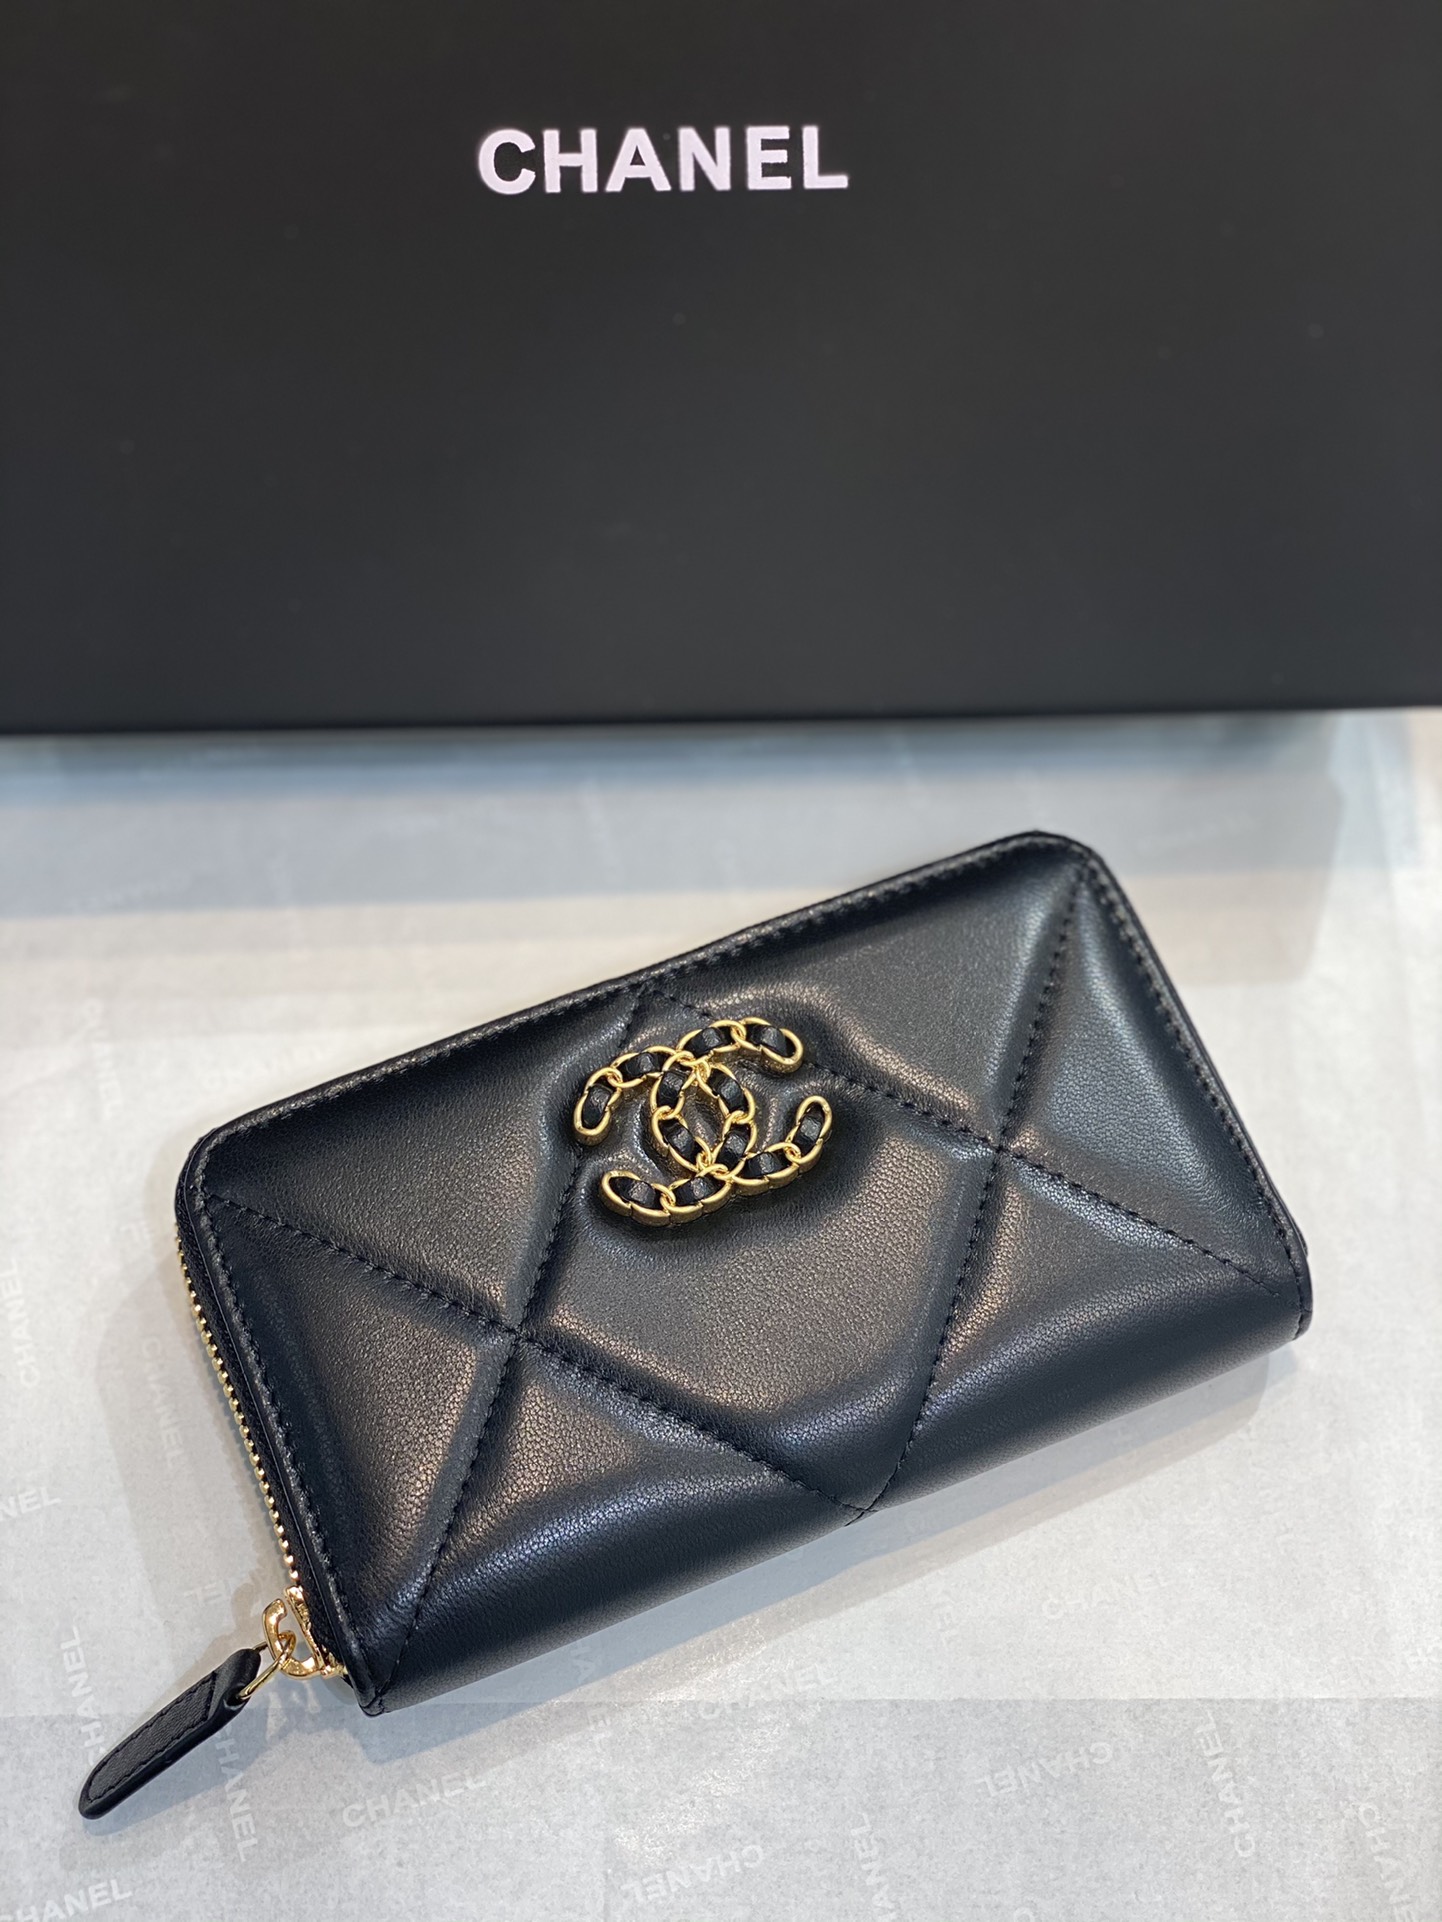 Chanel 19系列零钱包/小手包 全新设计  大菱格 大双c编织logo 小羊皮 款式时尚大方  尺寸9×15.5×2cm